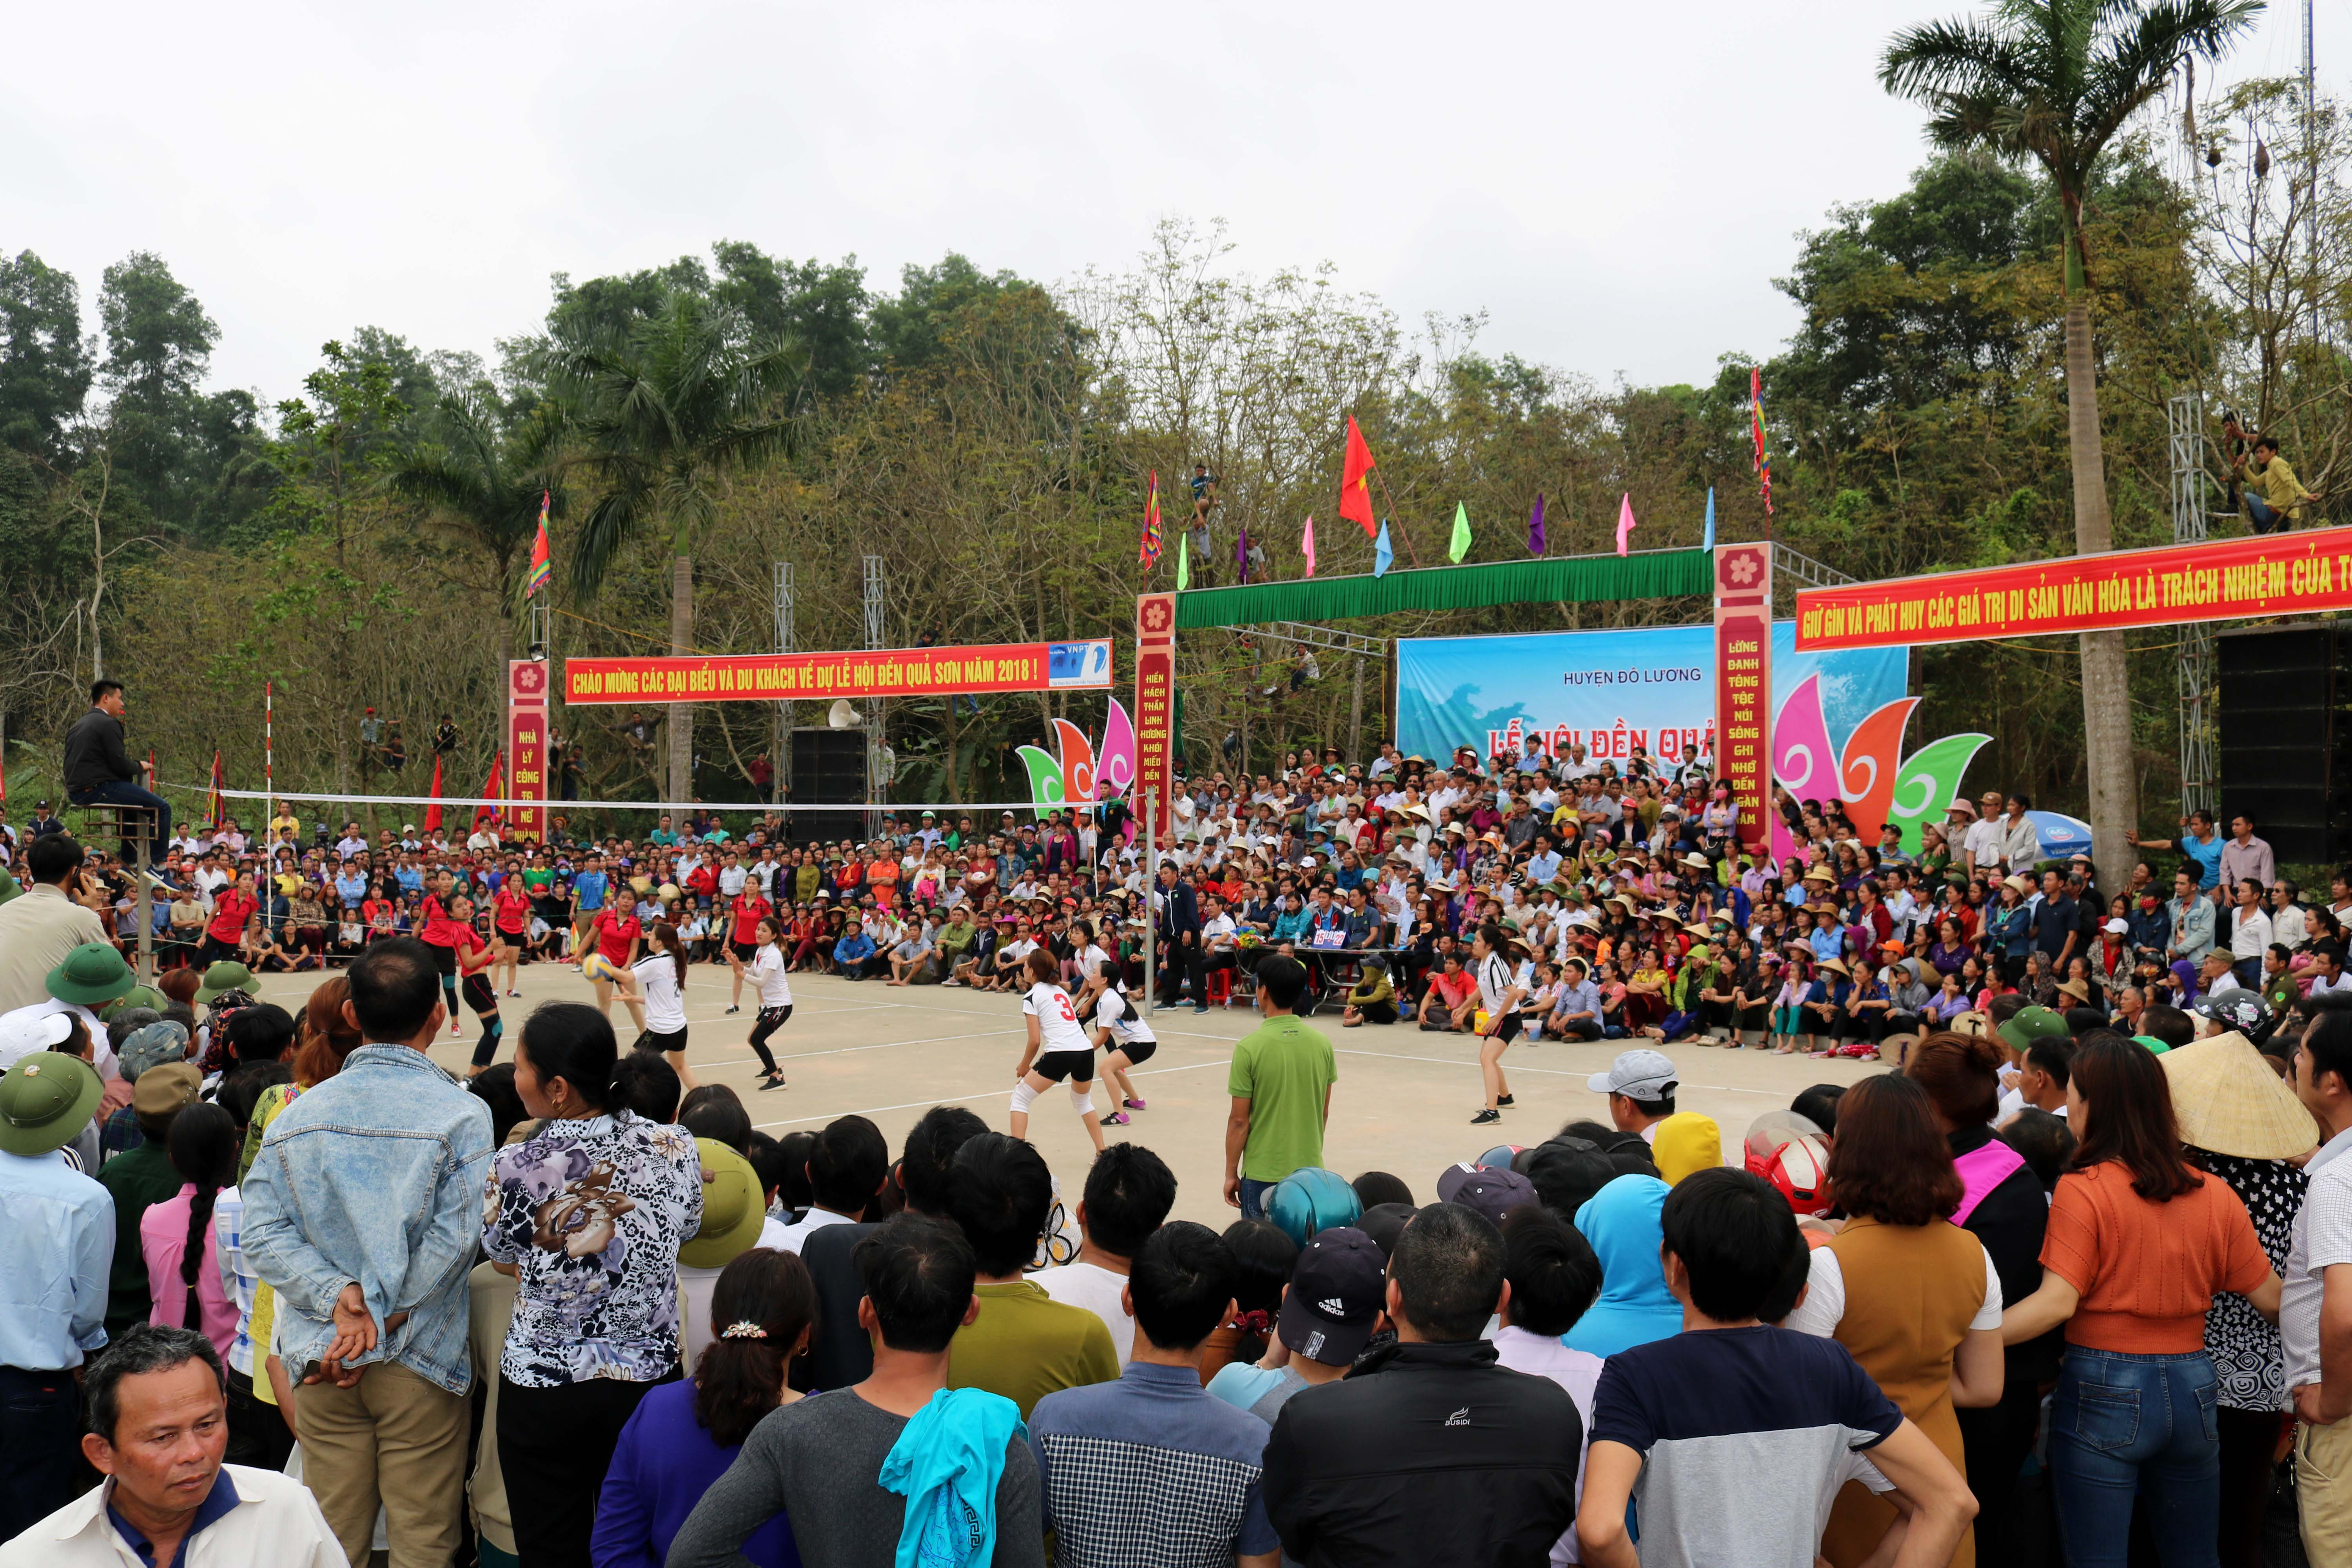 Sáng 6/3, diễn ra trận đấu bóng chuyền nữ giữa các xã trong huyện Đô Lương, hàng nghìn người trên sân háo hức theo dõi. Ảnh: Huy Thư